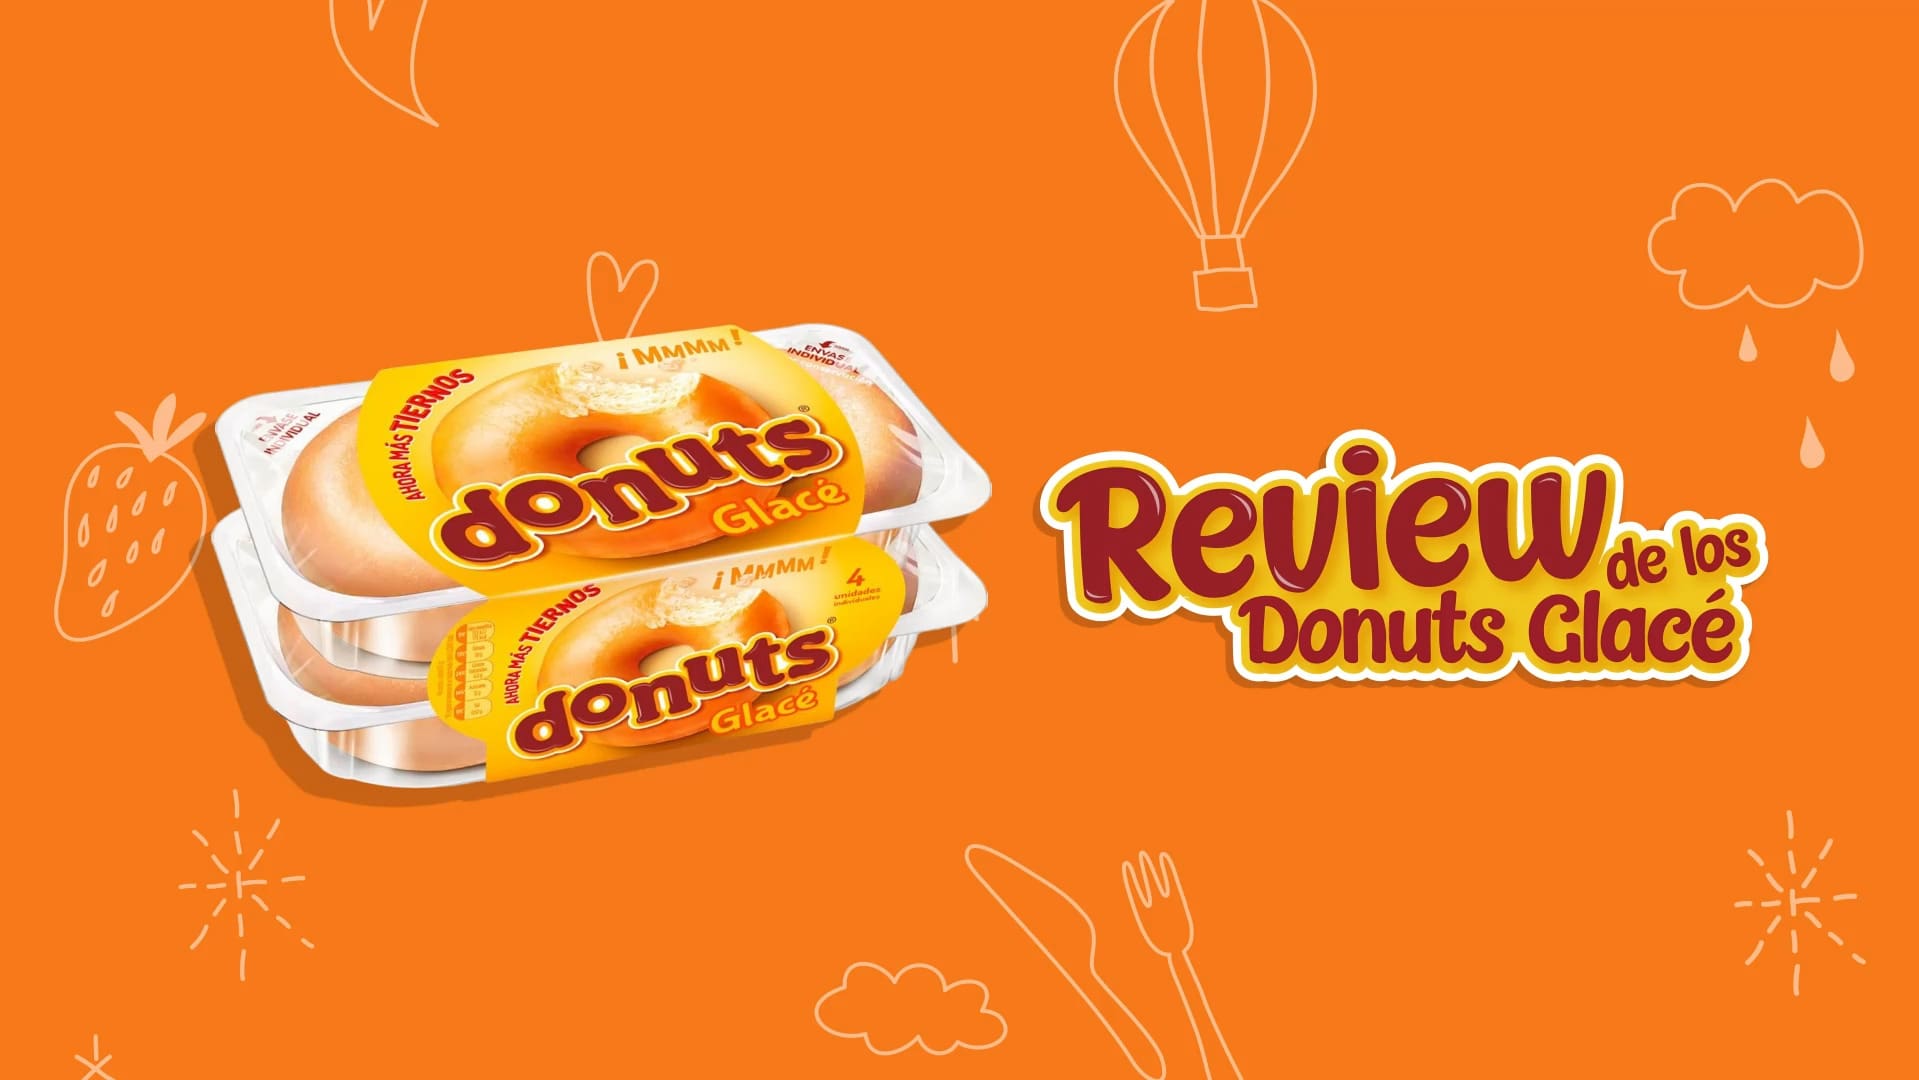 Opiniones de los Donuts glacé - Review de los Donuts glacé